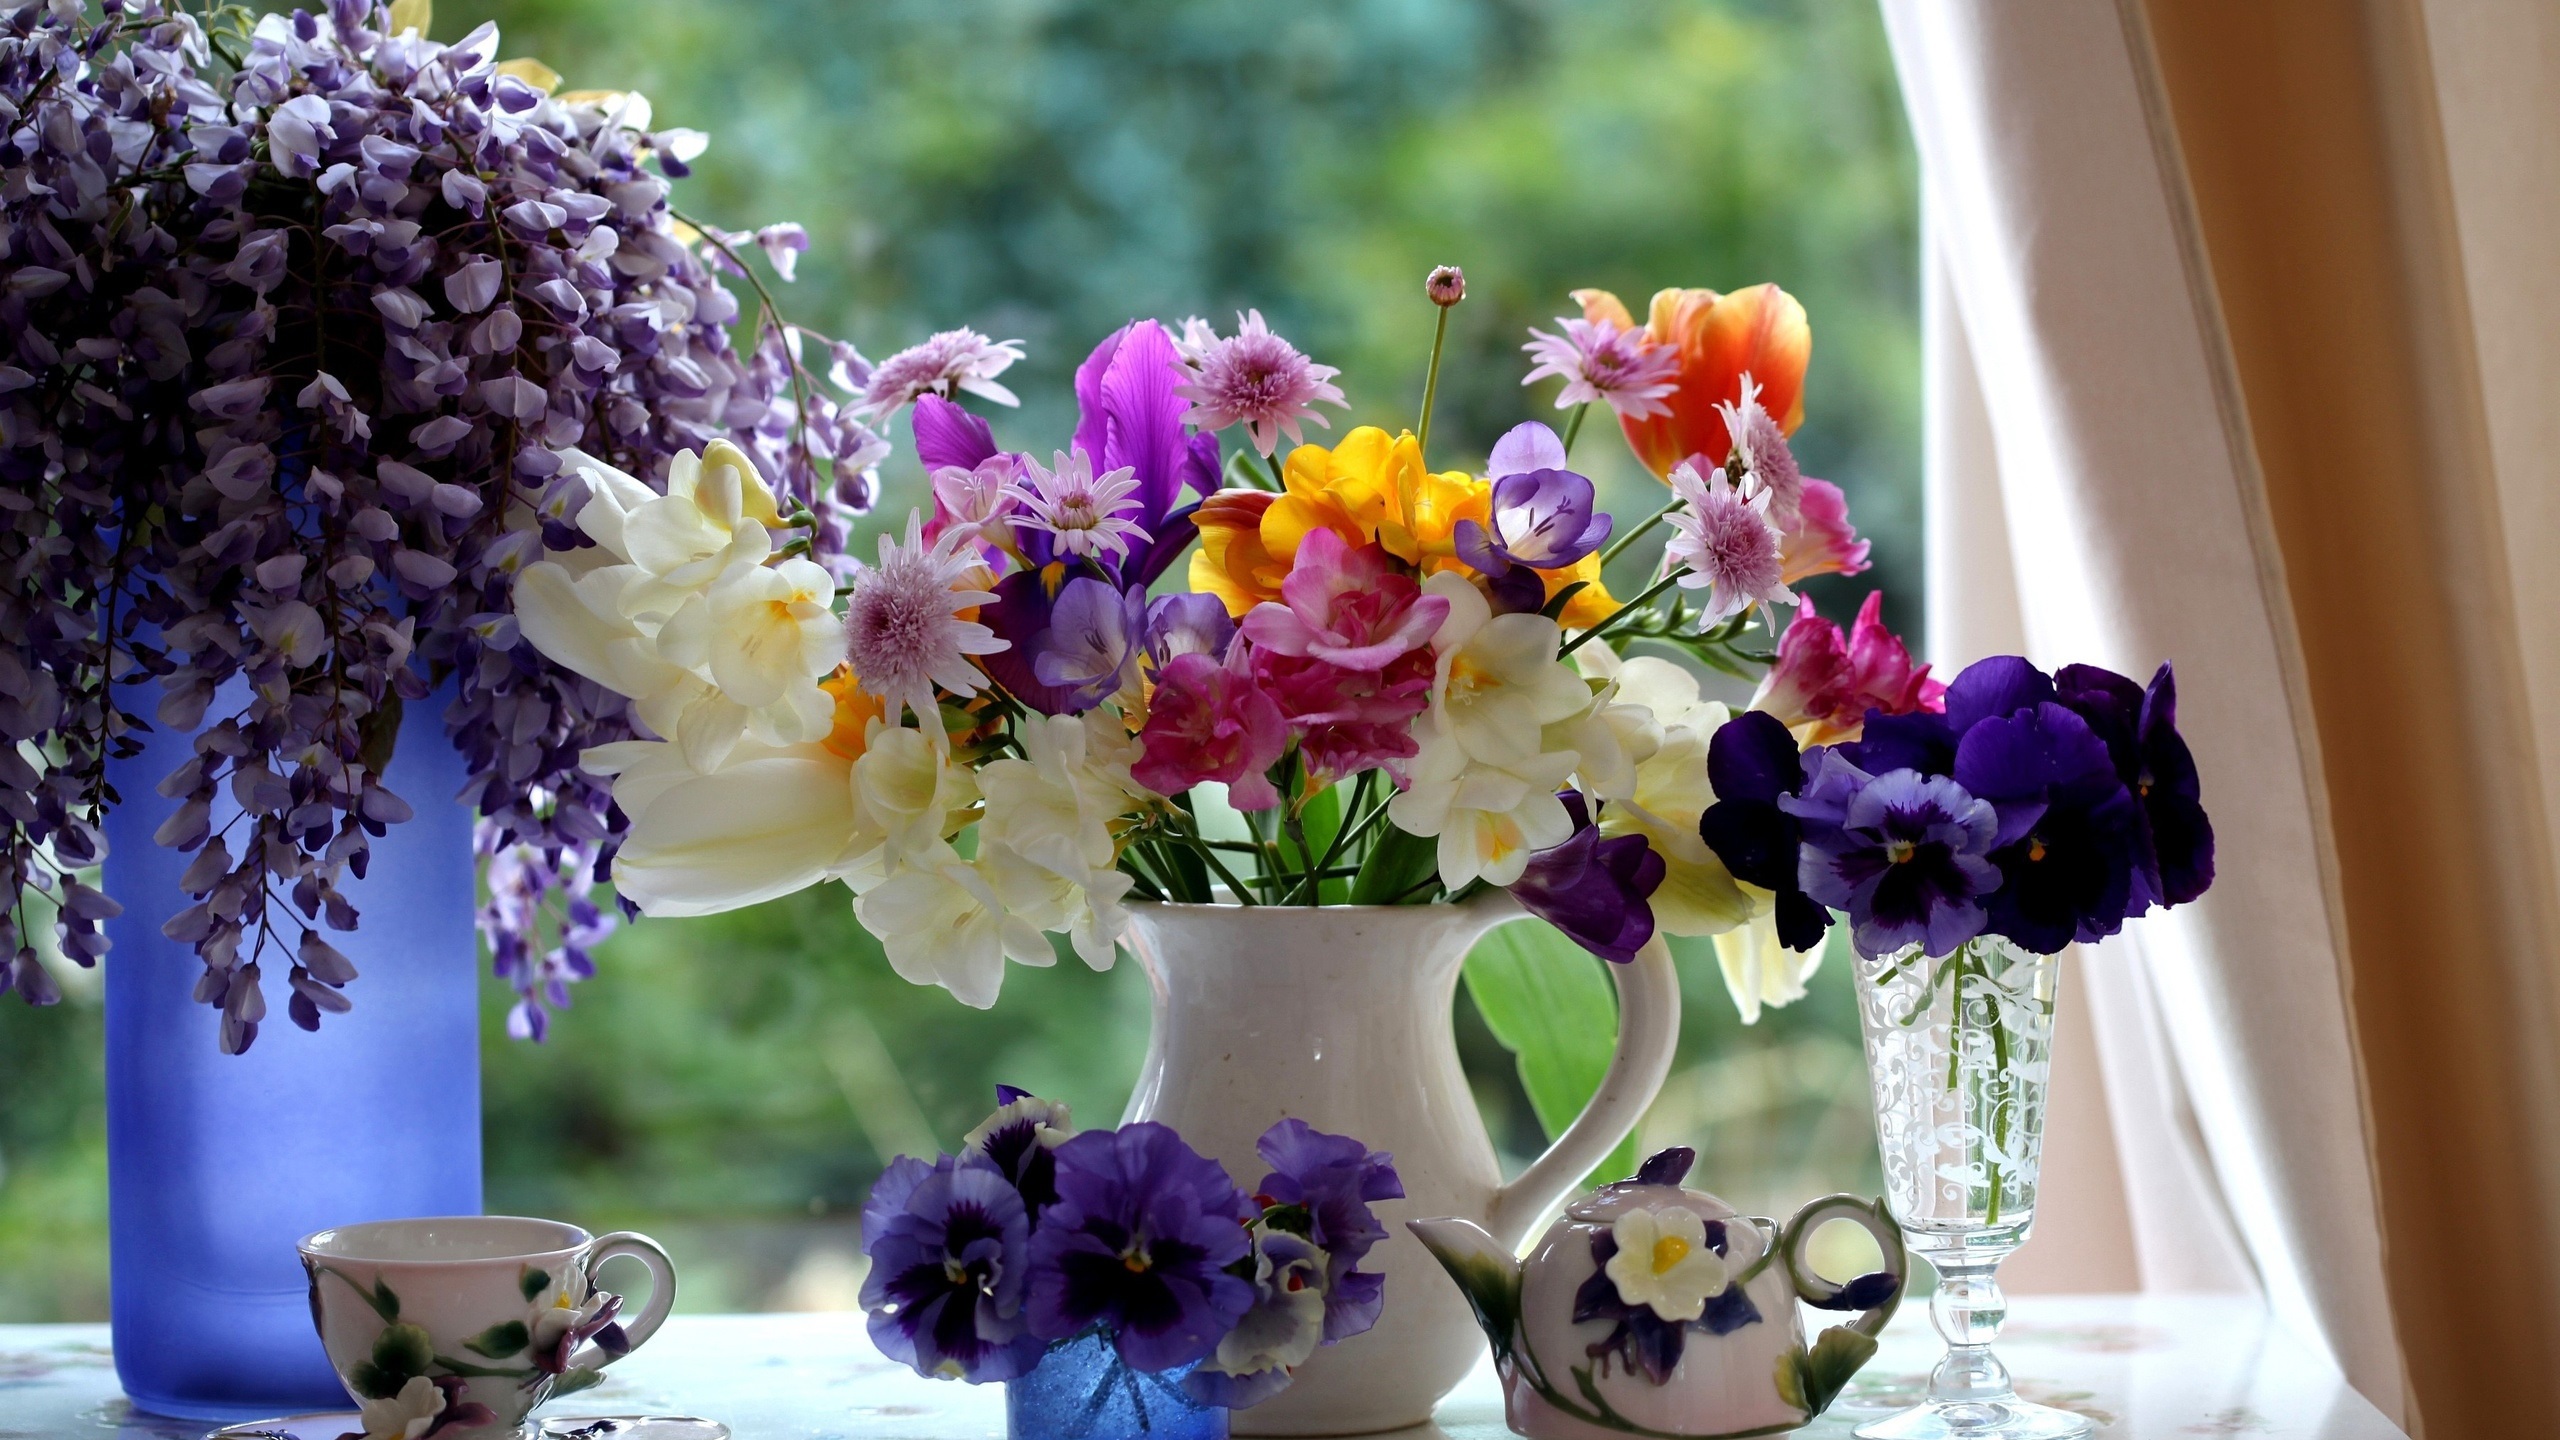 Flowers Vase Cup Tea Pot Curtains Table 2560x1440